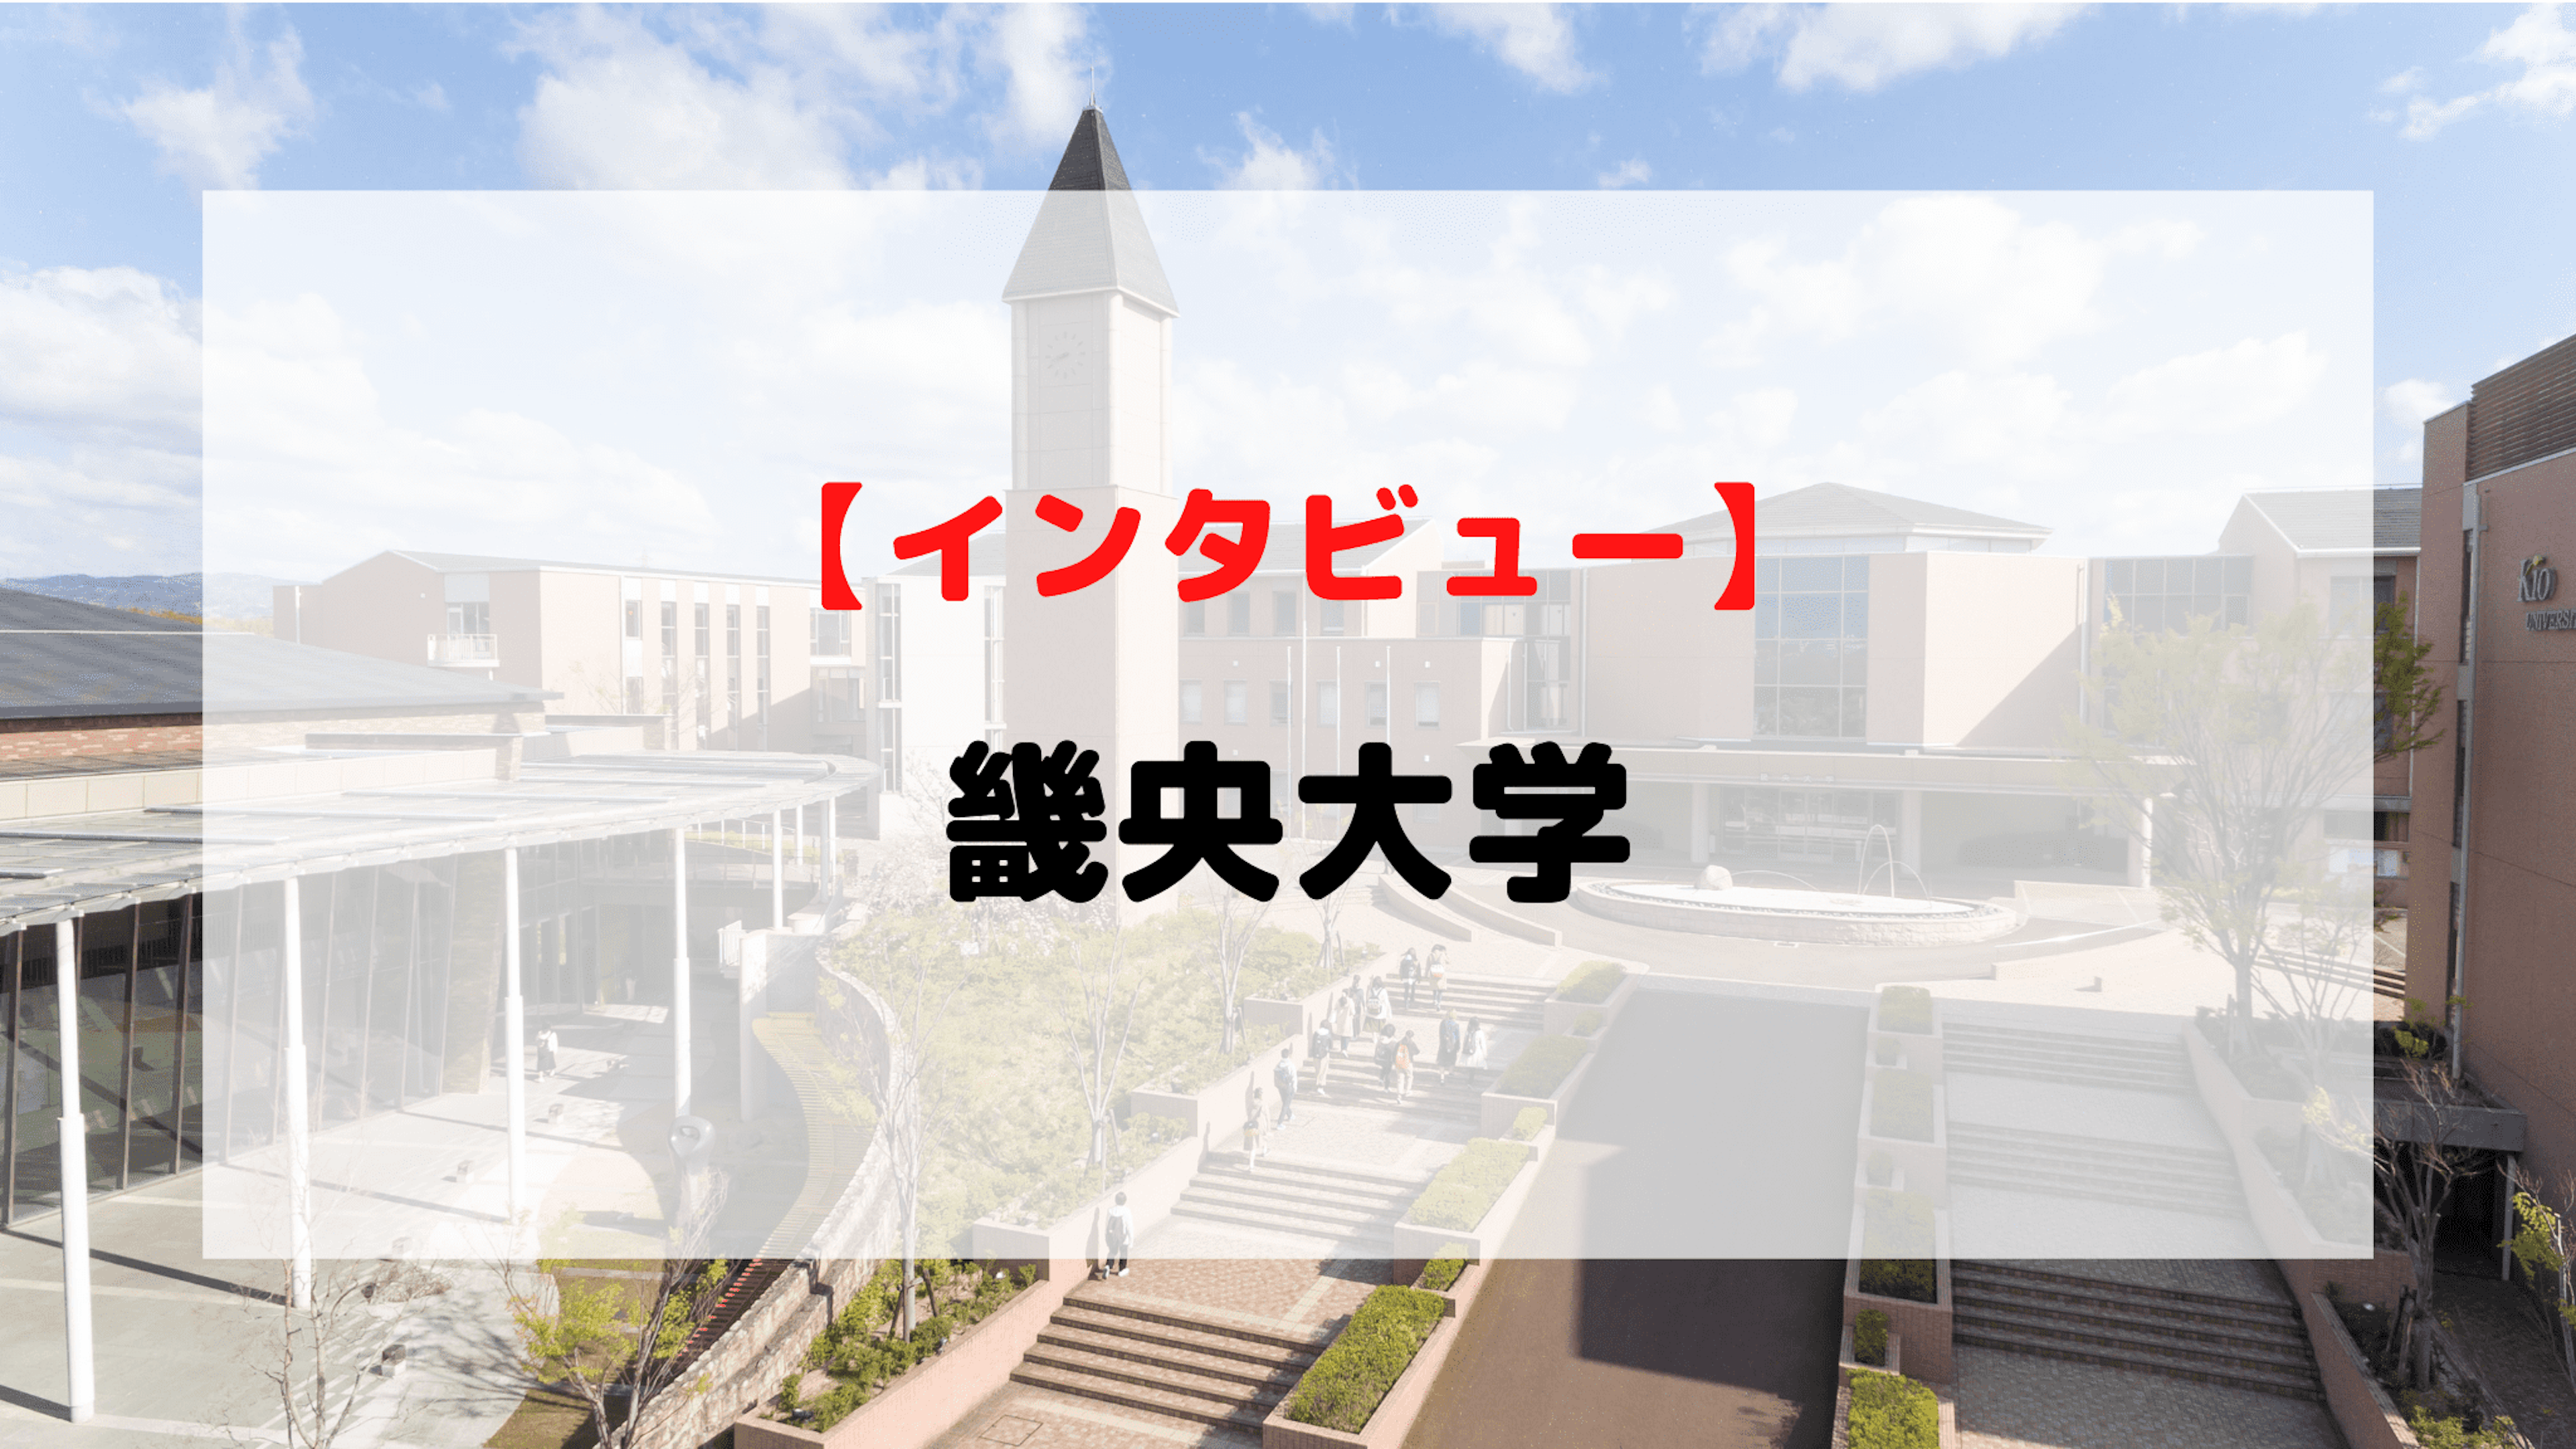 【インタビュー】畿央大学